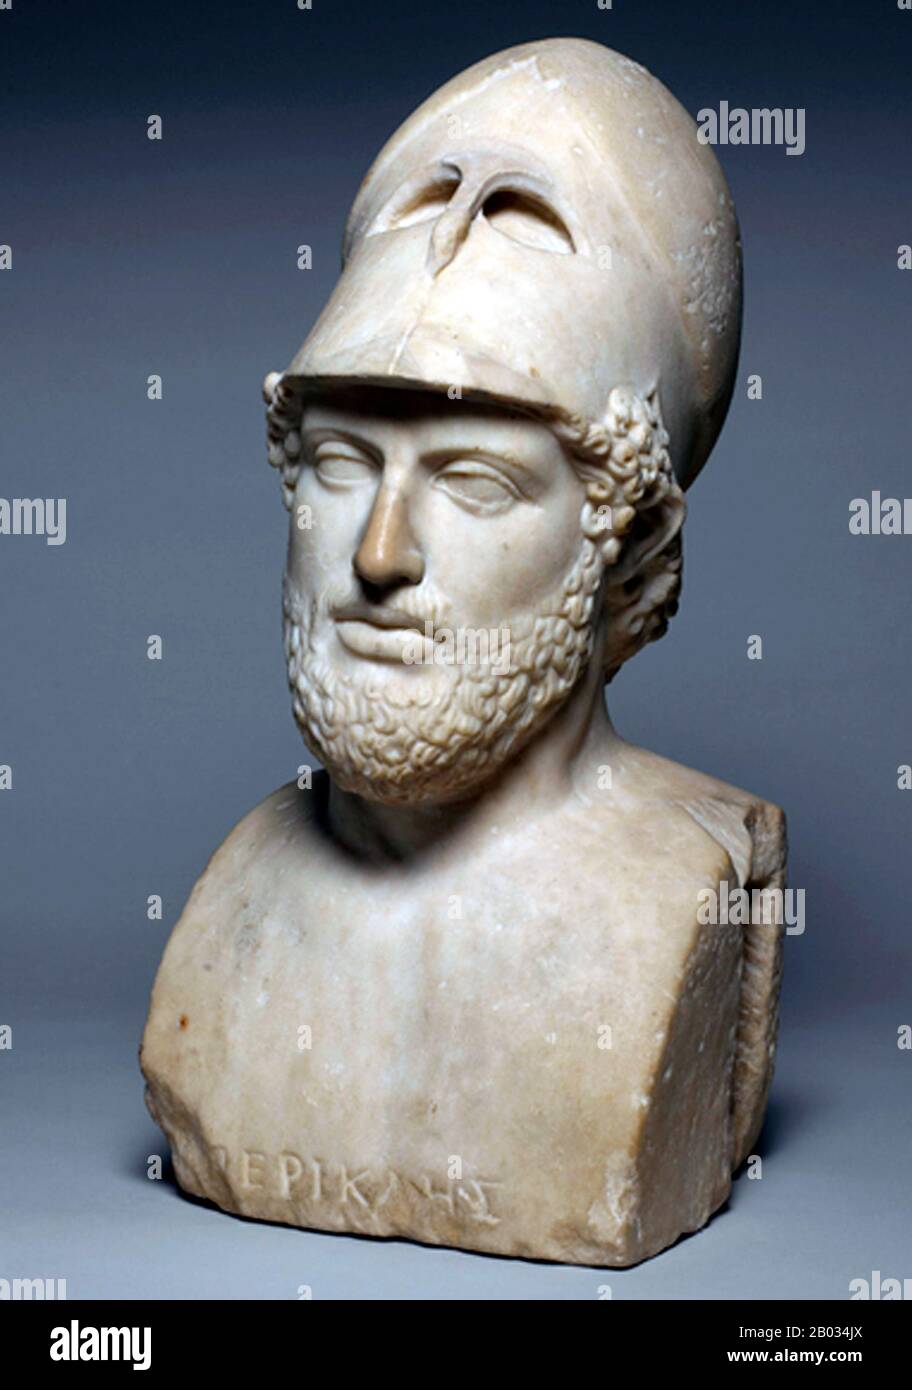 Perikles war während des Goldenen Zeitalters ein prominenter und einflussreicher griechischer Staatsmann, Orator und General Athens - konkret die Zeit zwischen dem Persischen und dem Peloponnesischen Krieg. Perikles hatte so großen Einfluss auf die athenische Gesellschaft, dass Thucydides, ein zeitgenössischer Historiker, ihn als "ersten Bürger Athens" anerkannte. Stockfoto